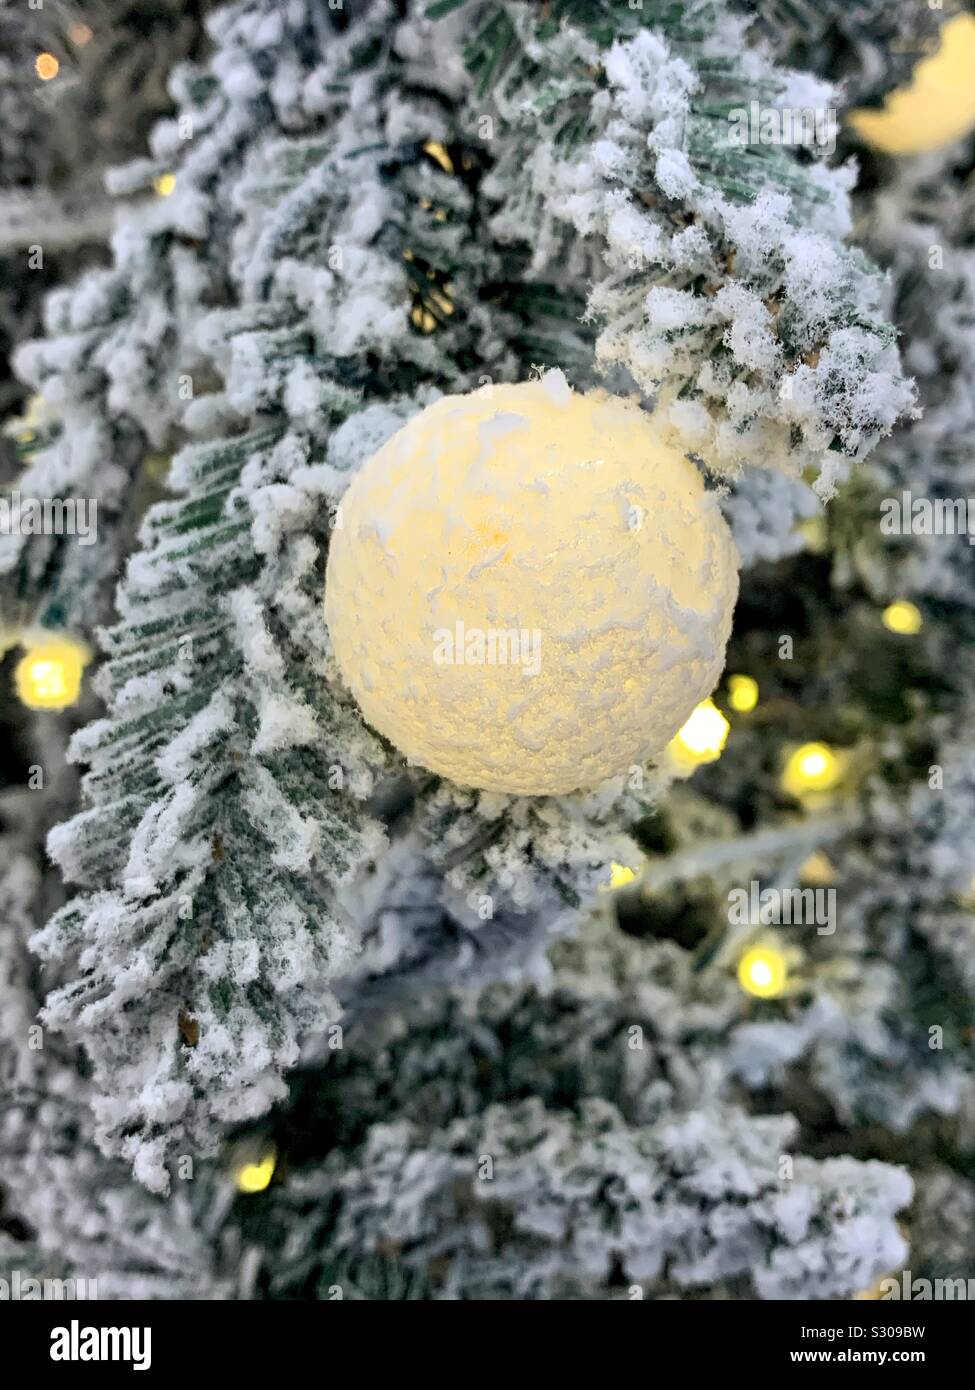 Tenue illuminazione albero di Natale ornamento appeso su un snowy pine tree Foto Stock